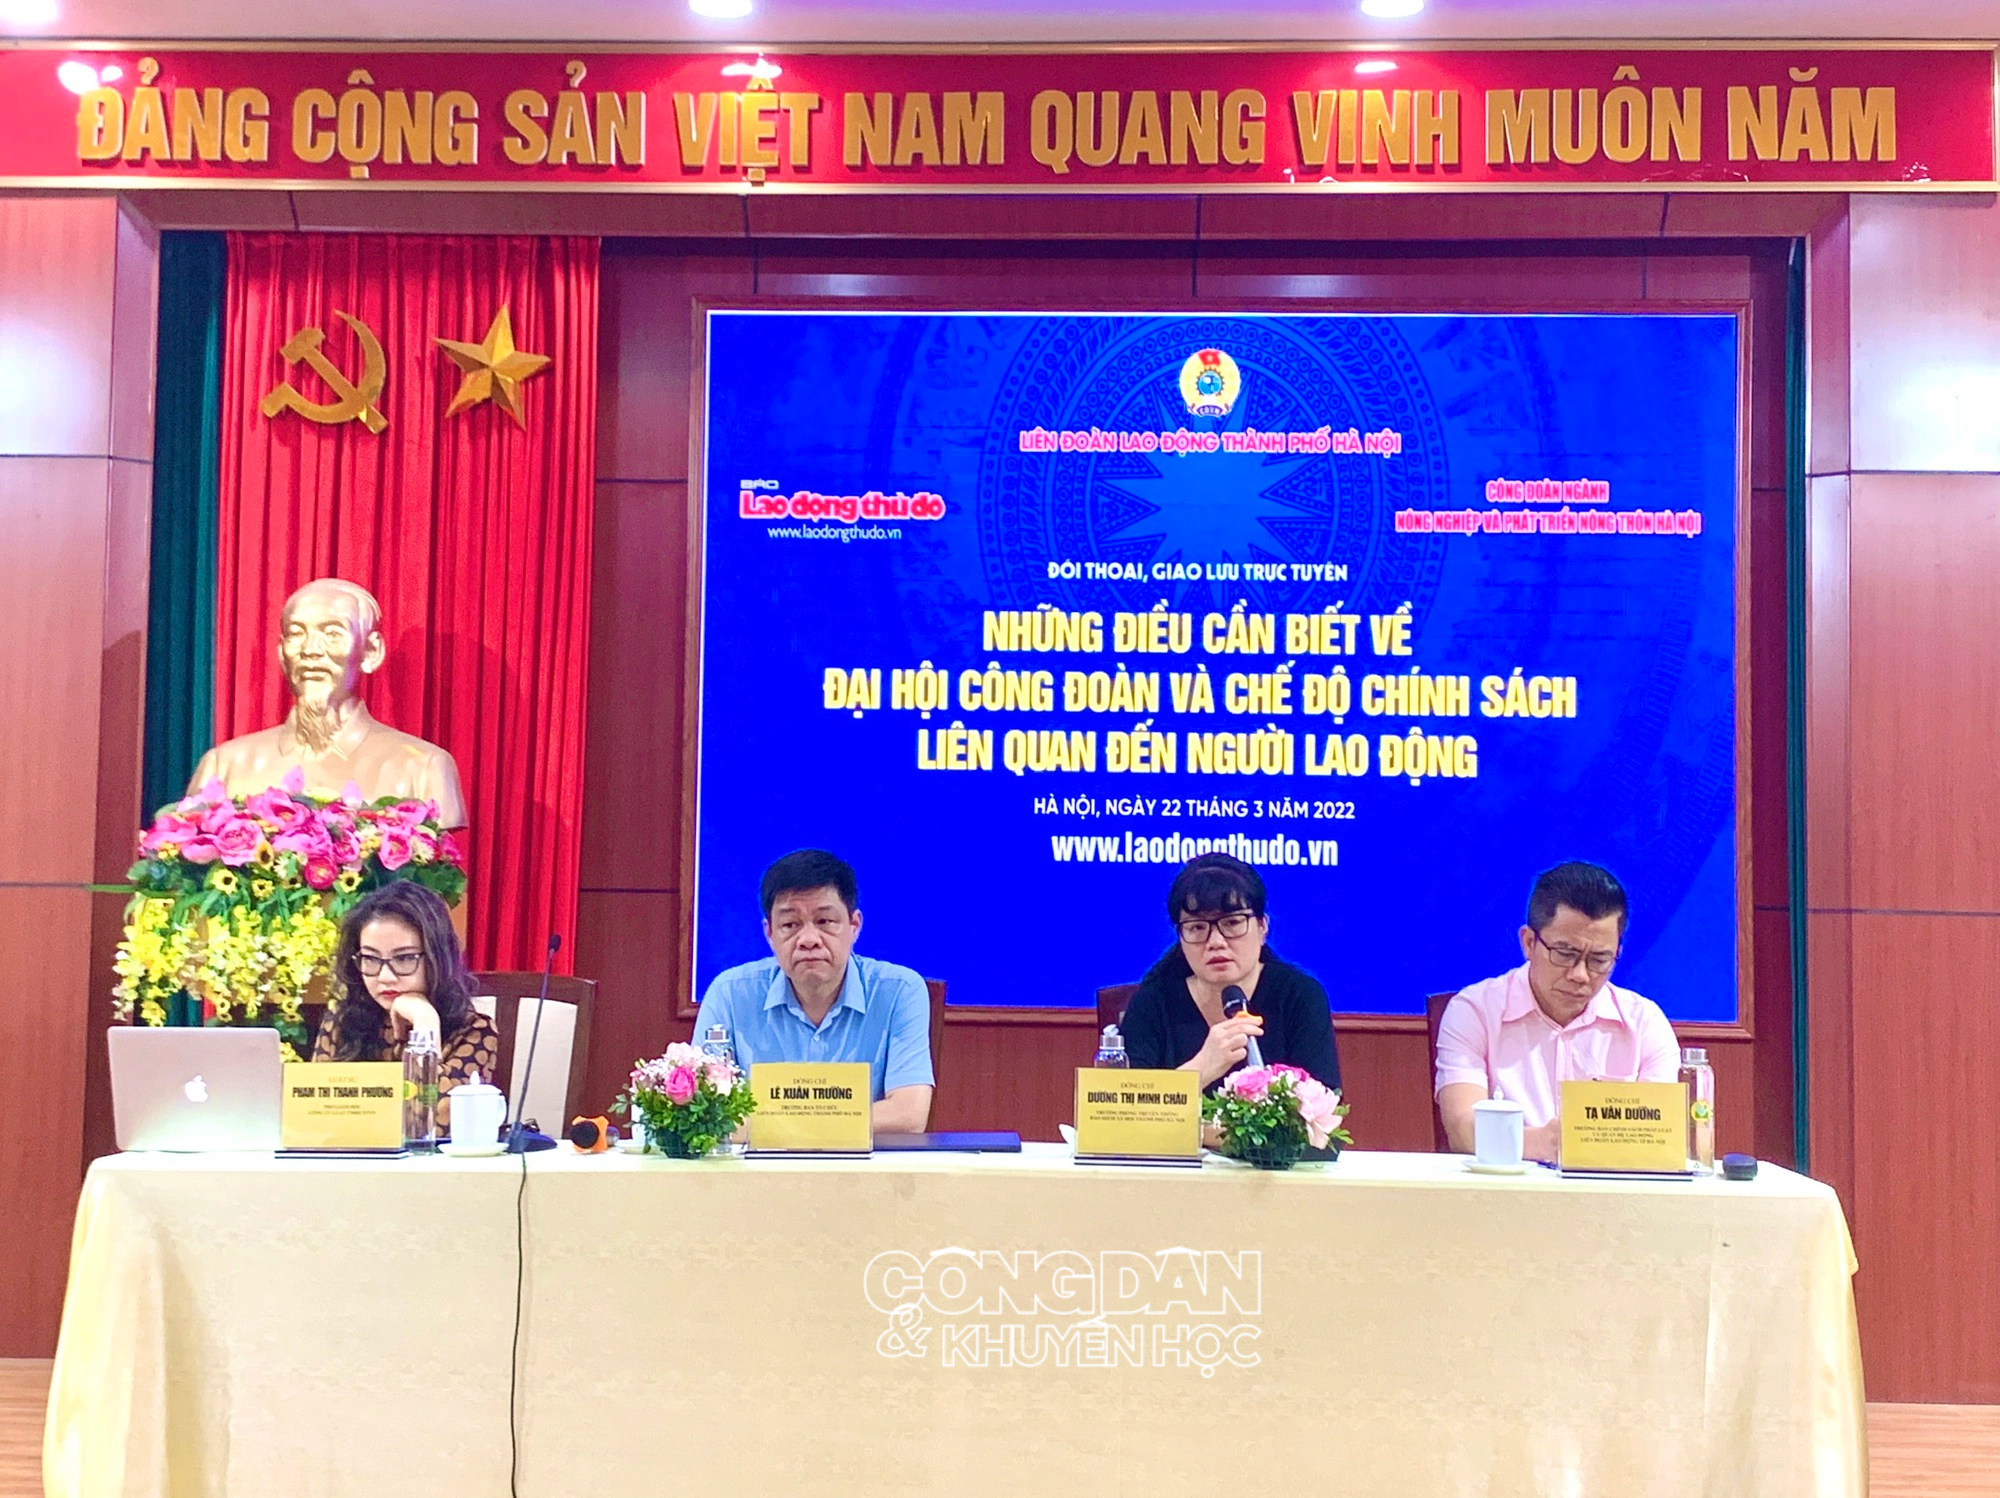 Hà Nội: Đối thoại về Đại hội Công đoàn và các chế độ, chính sách liên quan đến người lao động - Ảnh 4.